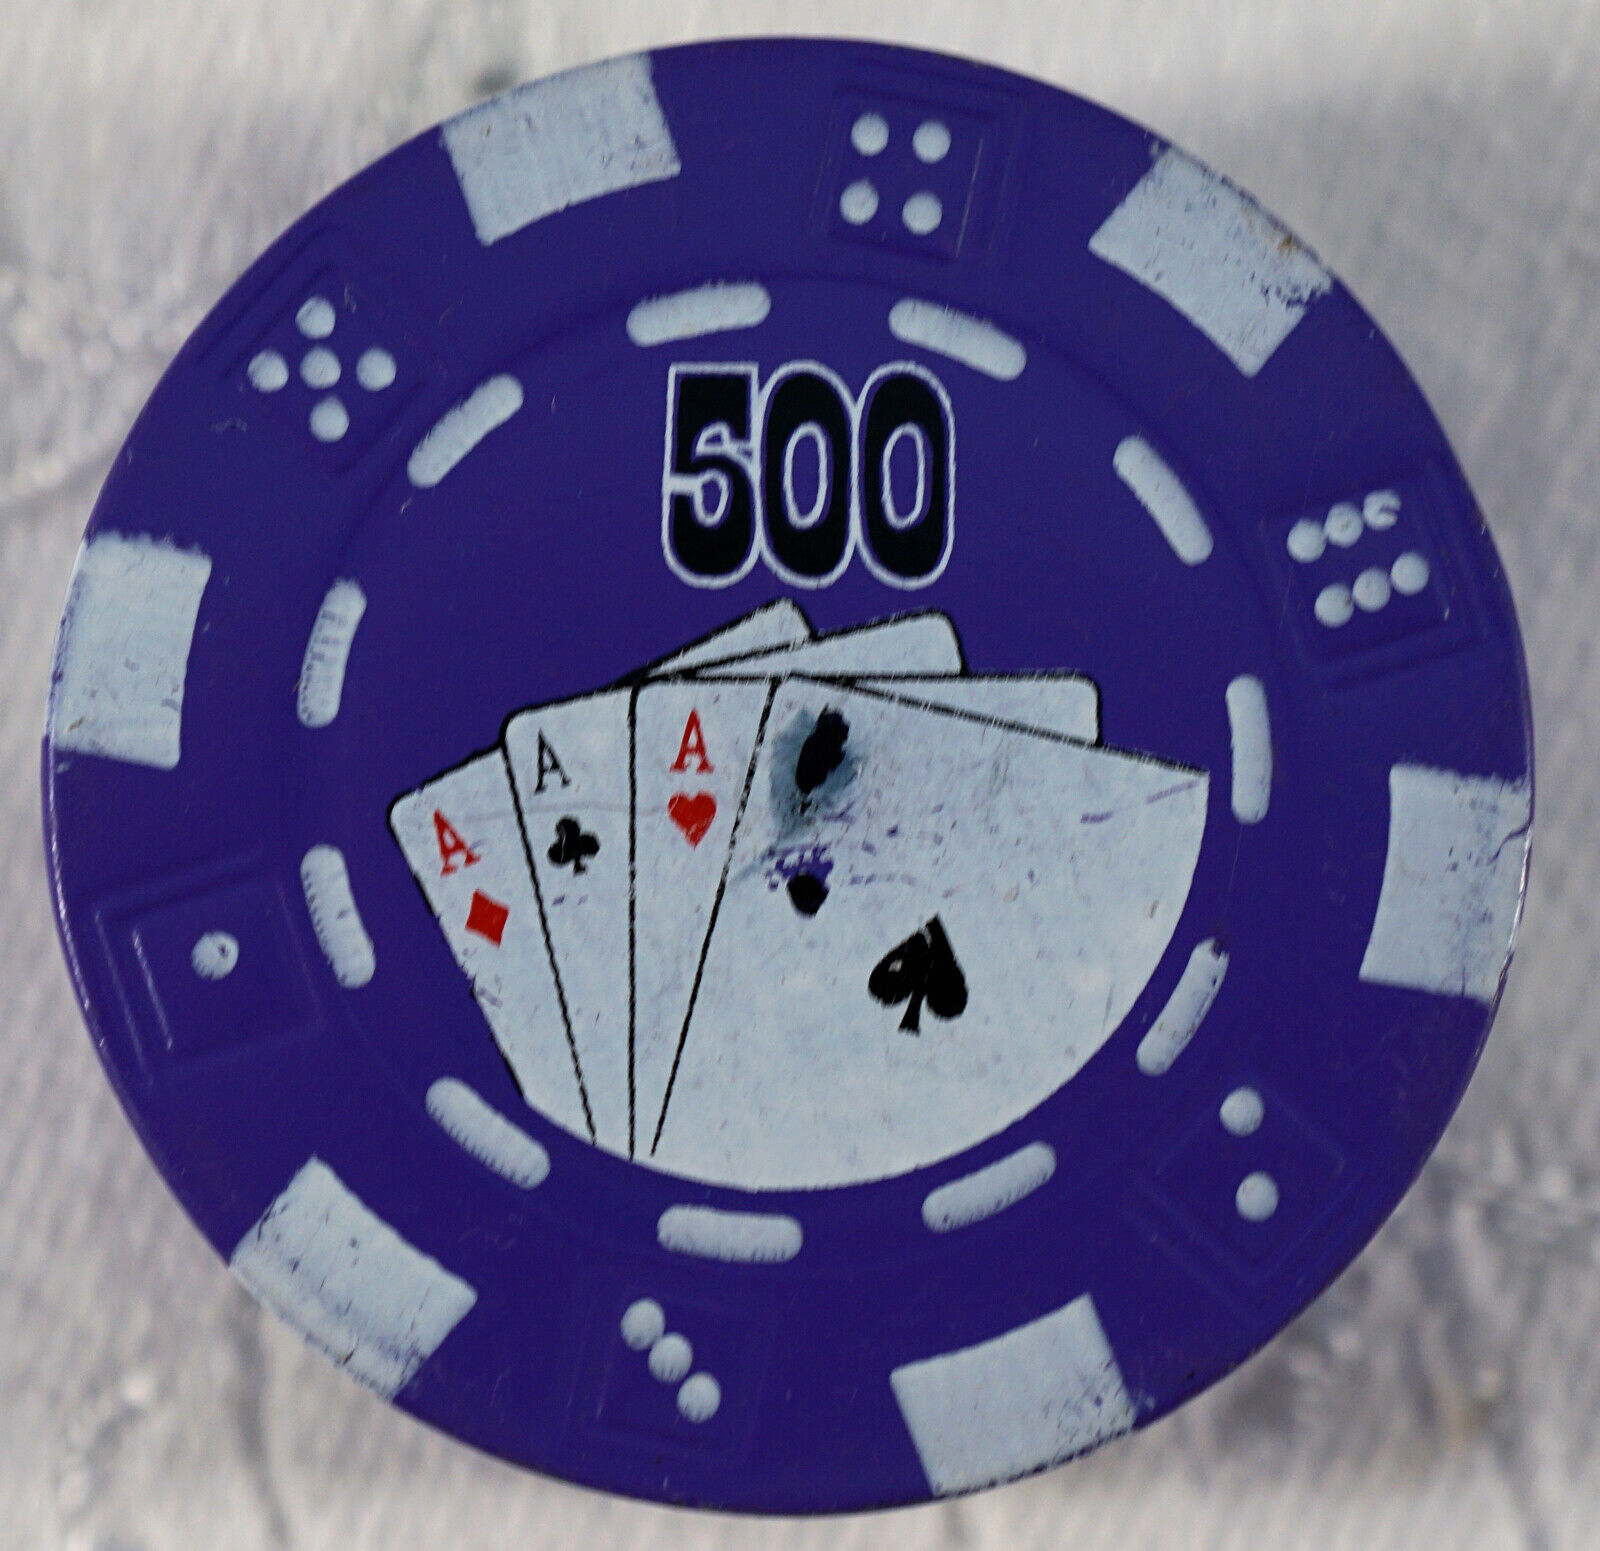 $500 Casino Poker Chip Refillable Novelty Butane Cigarette Lighter Tested Works